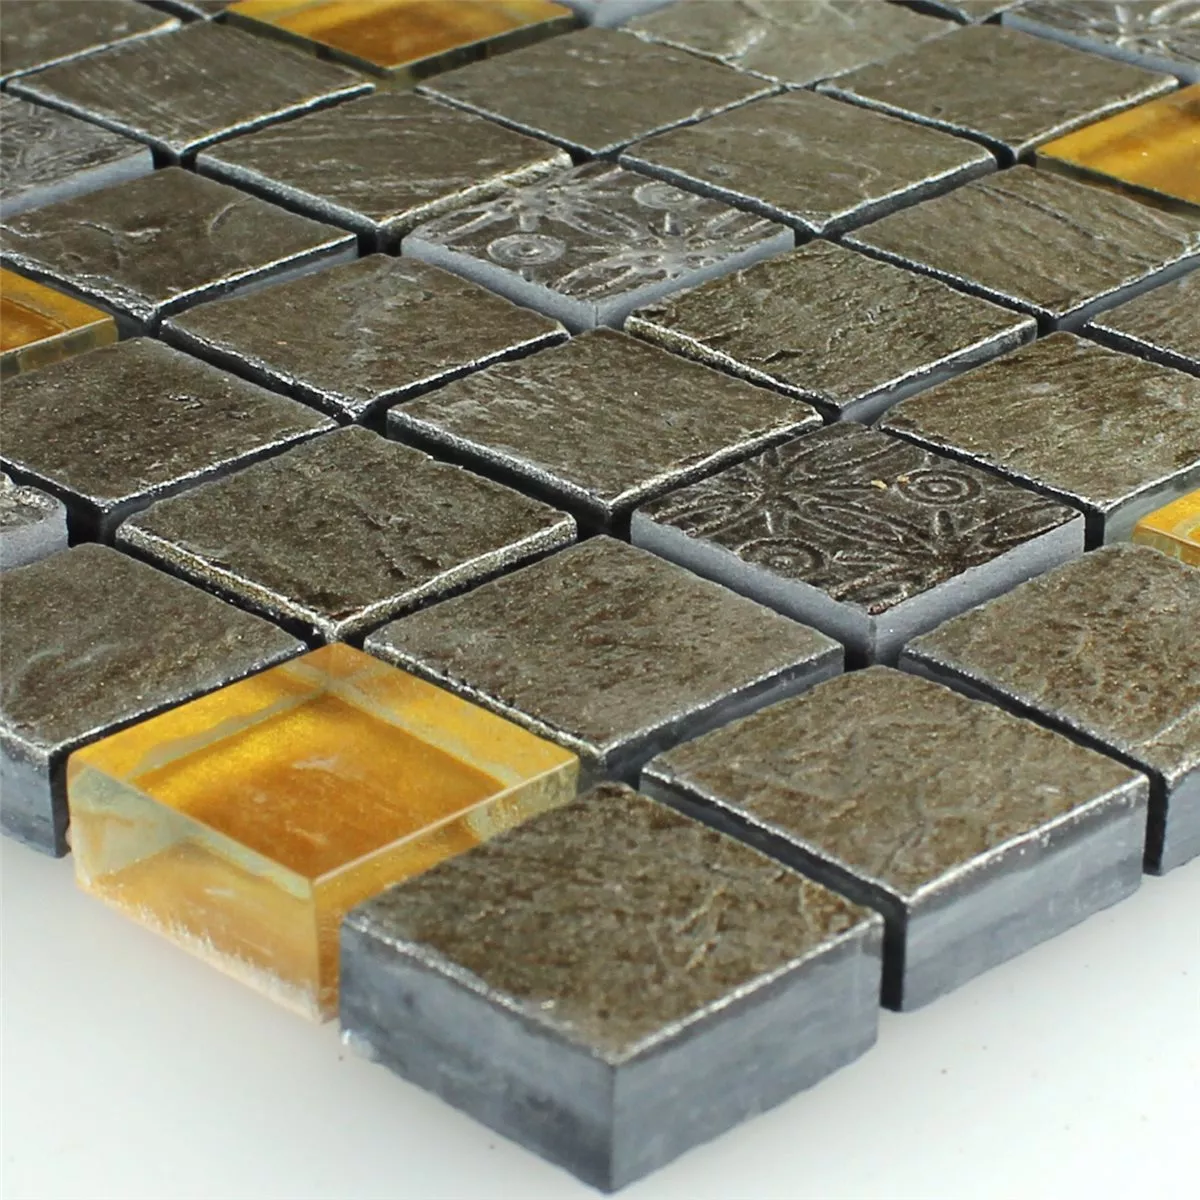 Mozaik Pločice Staklo Prirodni Kamen Siva Narančasta